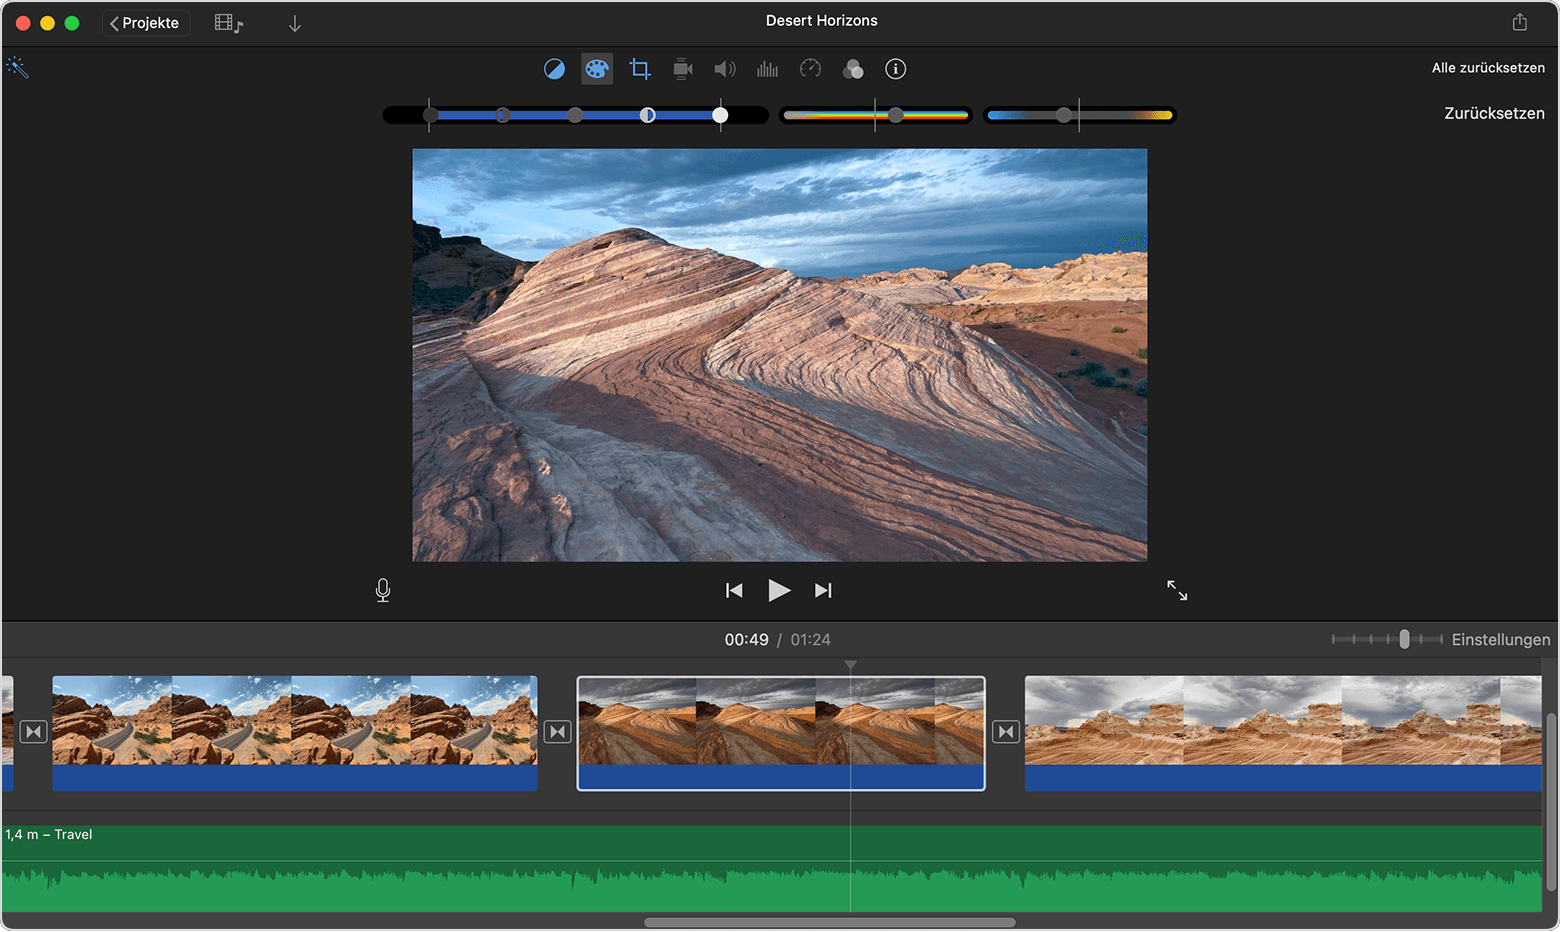 iMovie-Projektfenster auf dem Mac mit angezeigten Steuerelementen für die Farbkorrektur